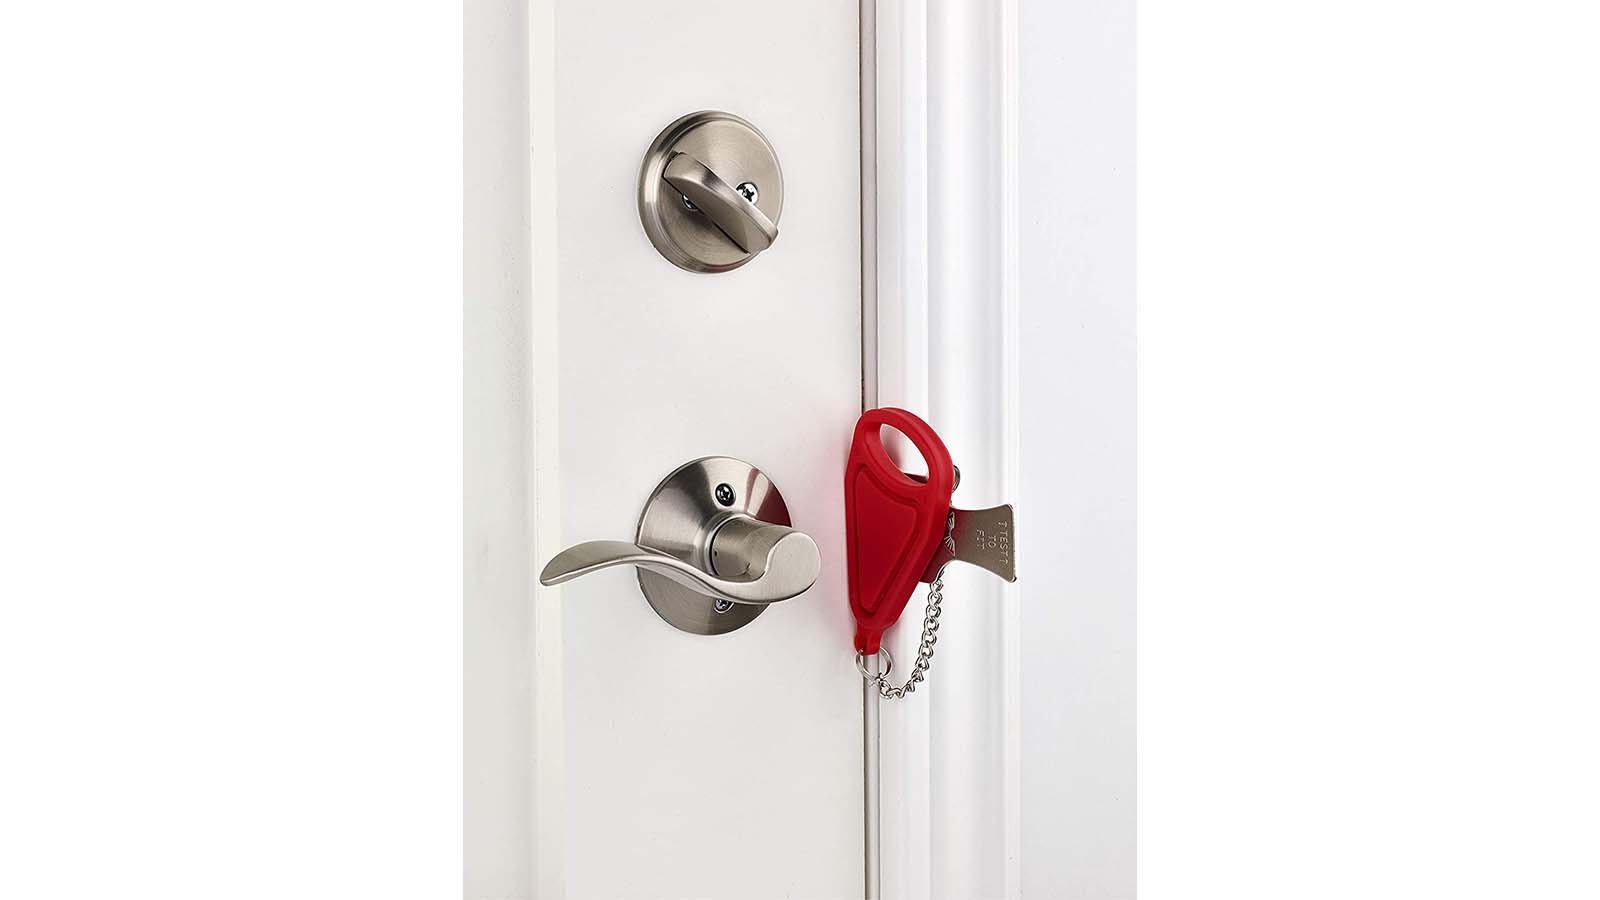 Portable Door Lock for Hotel Room & Travel Security - DoorJammer™